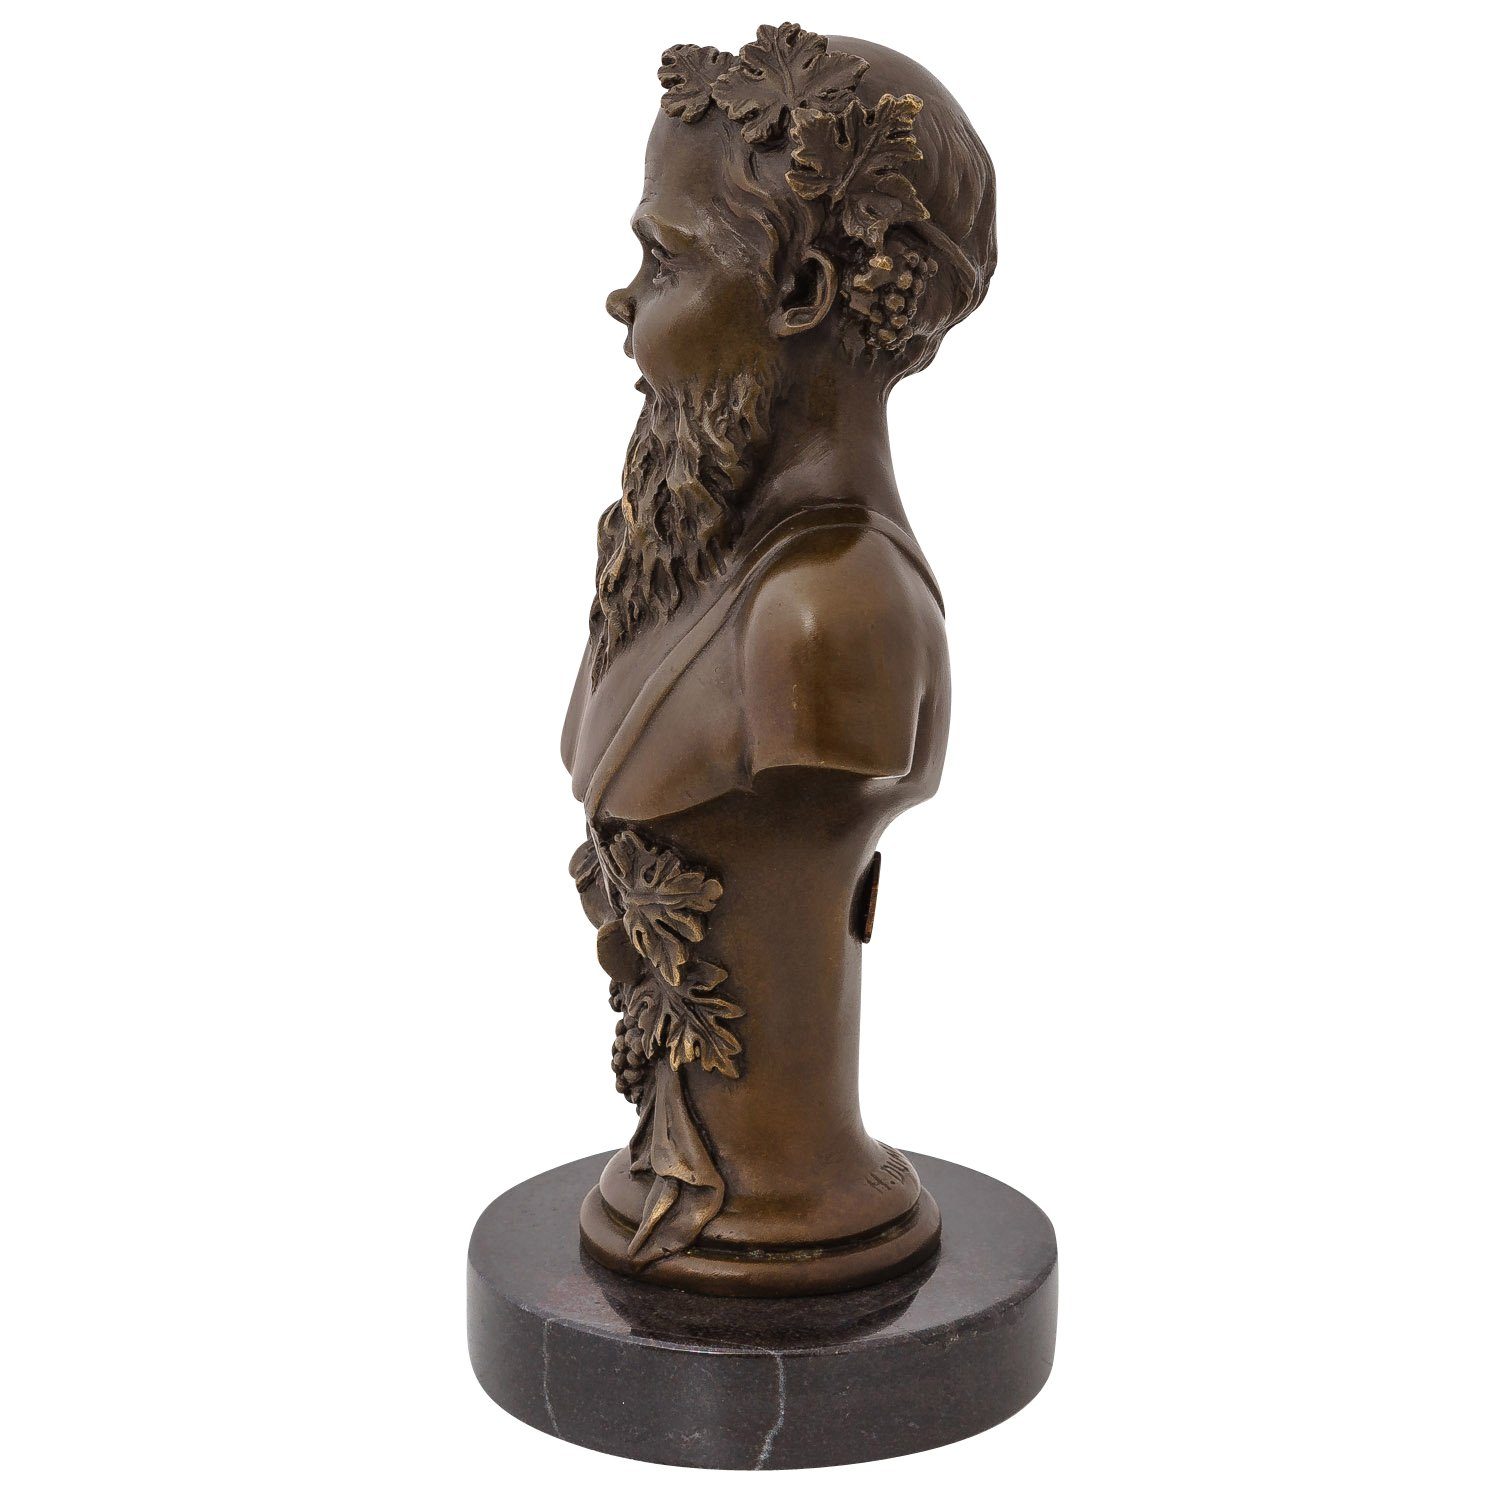 Skulptur Skulptur Gott Bacchus Antik-Stil Wein des römischer Bronzefigur Aubaho Büste